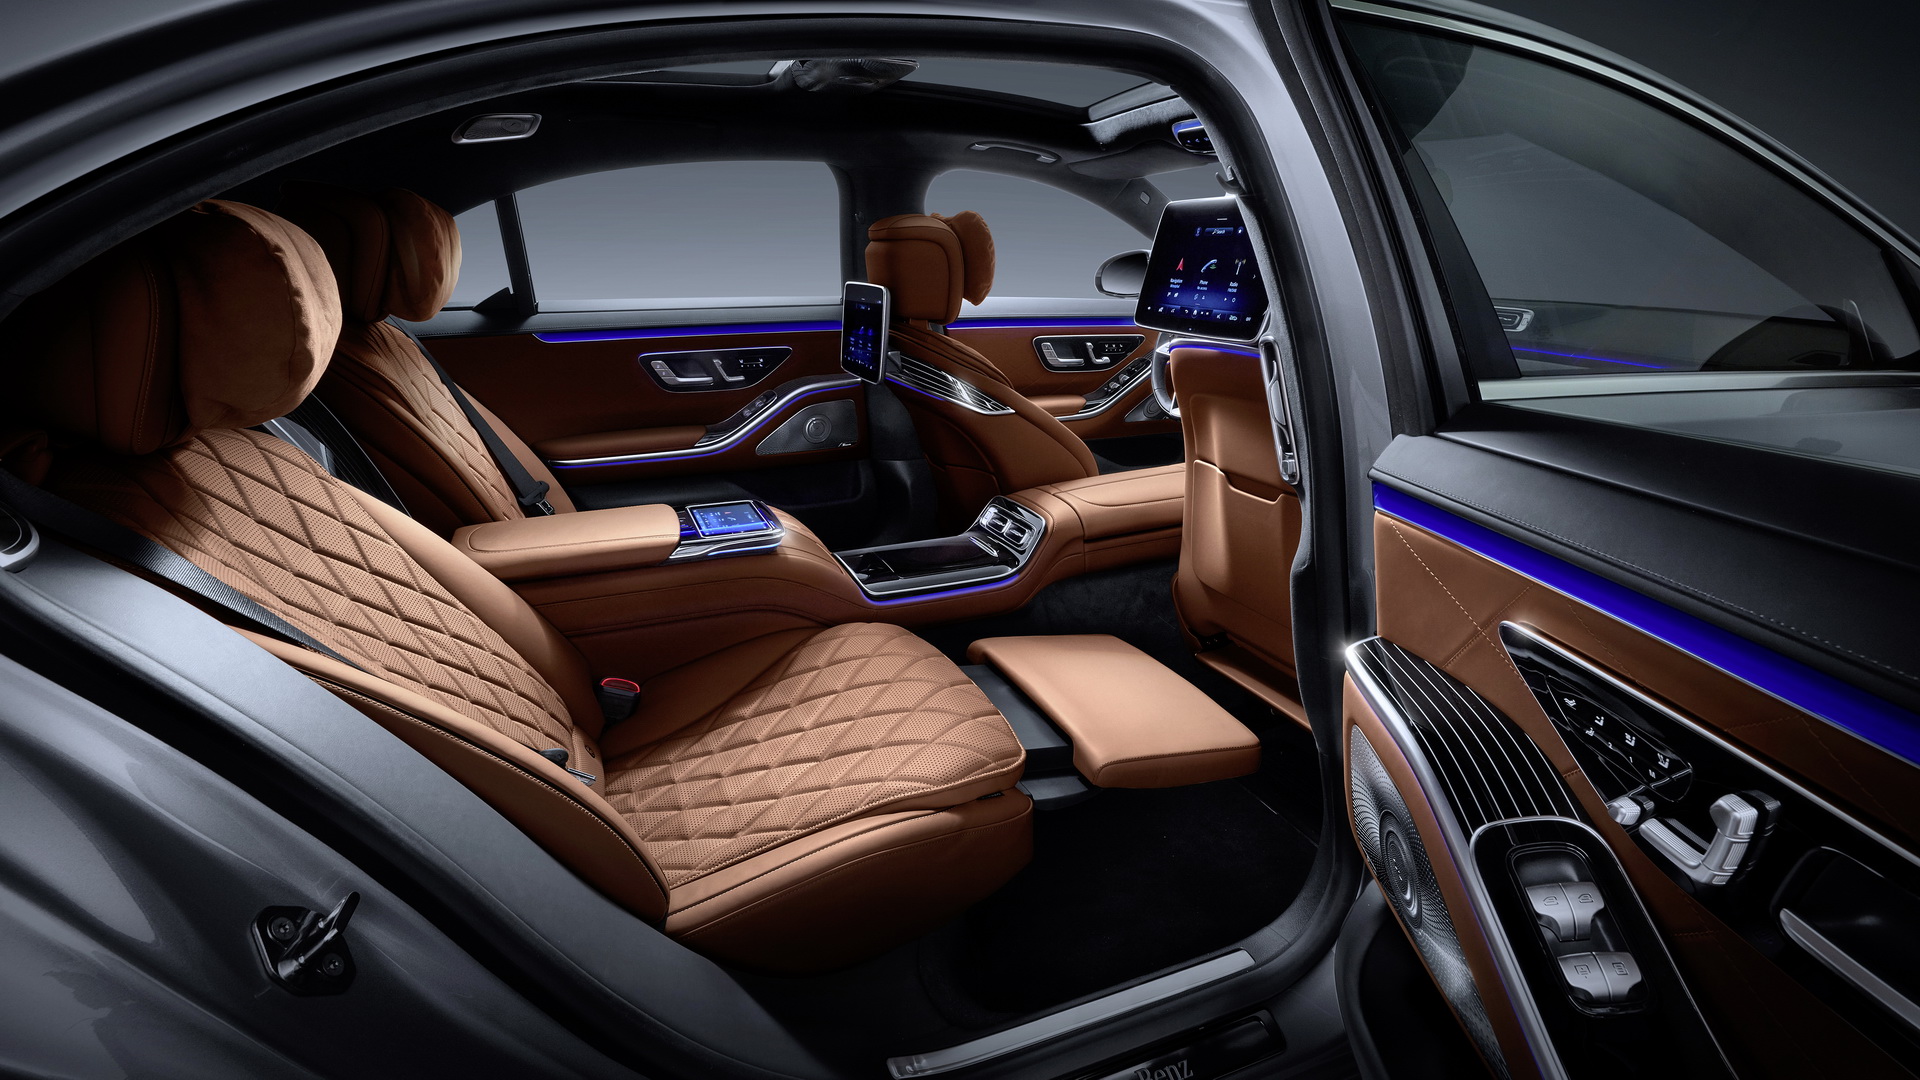 2021 Mercedes-Benz S-Serisi tanıtıldı: Yeni tasarım, gelişmiş teknolojiler ve daha güçlü motorlar